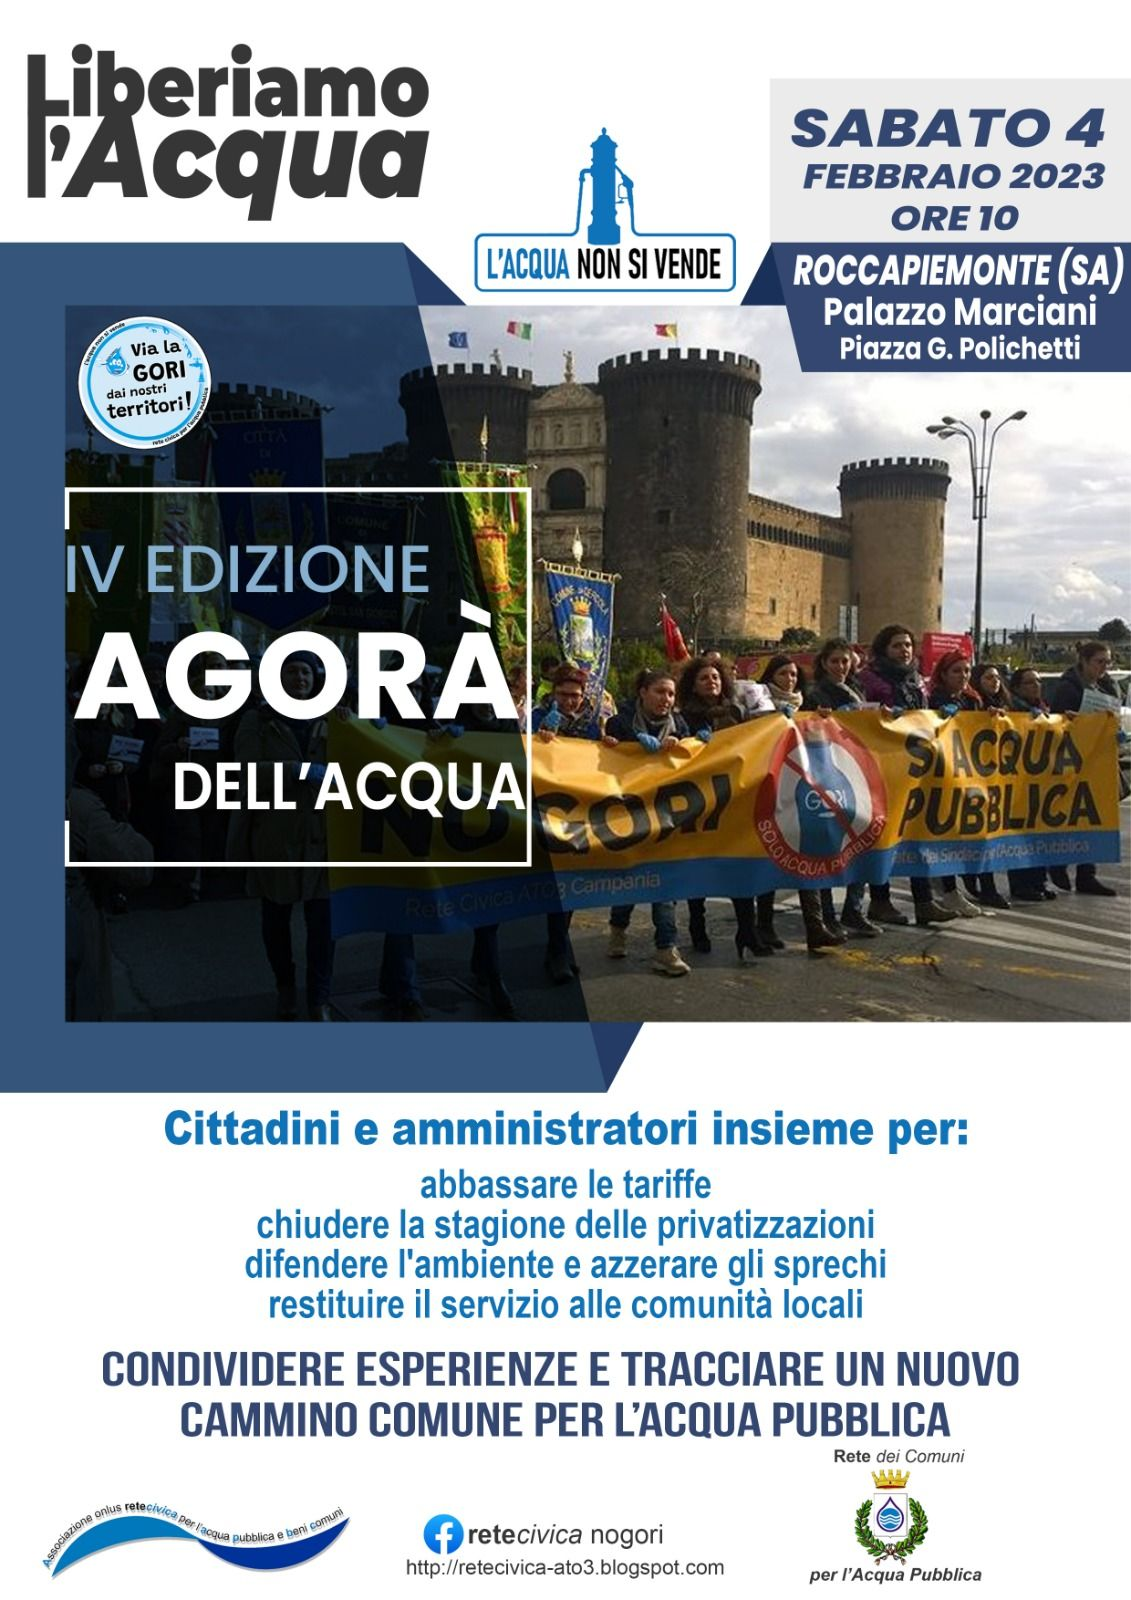 Roccapiemonte: Acqua pubblica, comitati e sindaci a confronto nell’Agorà